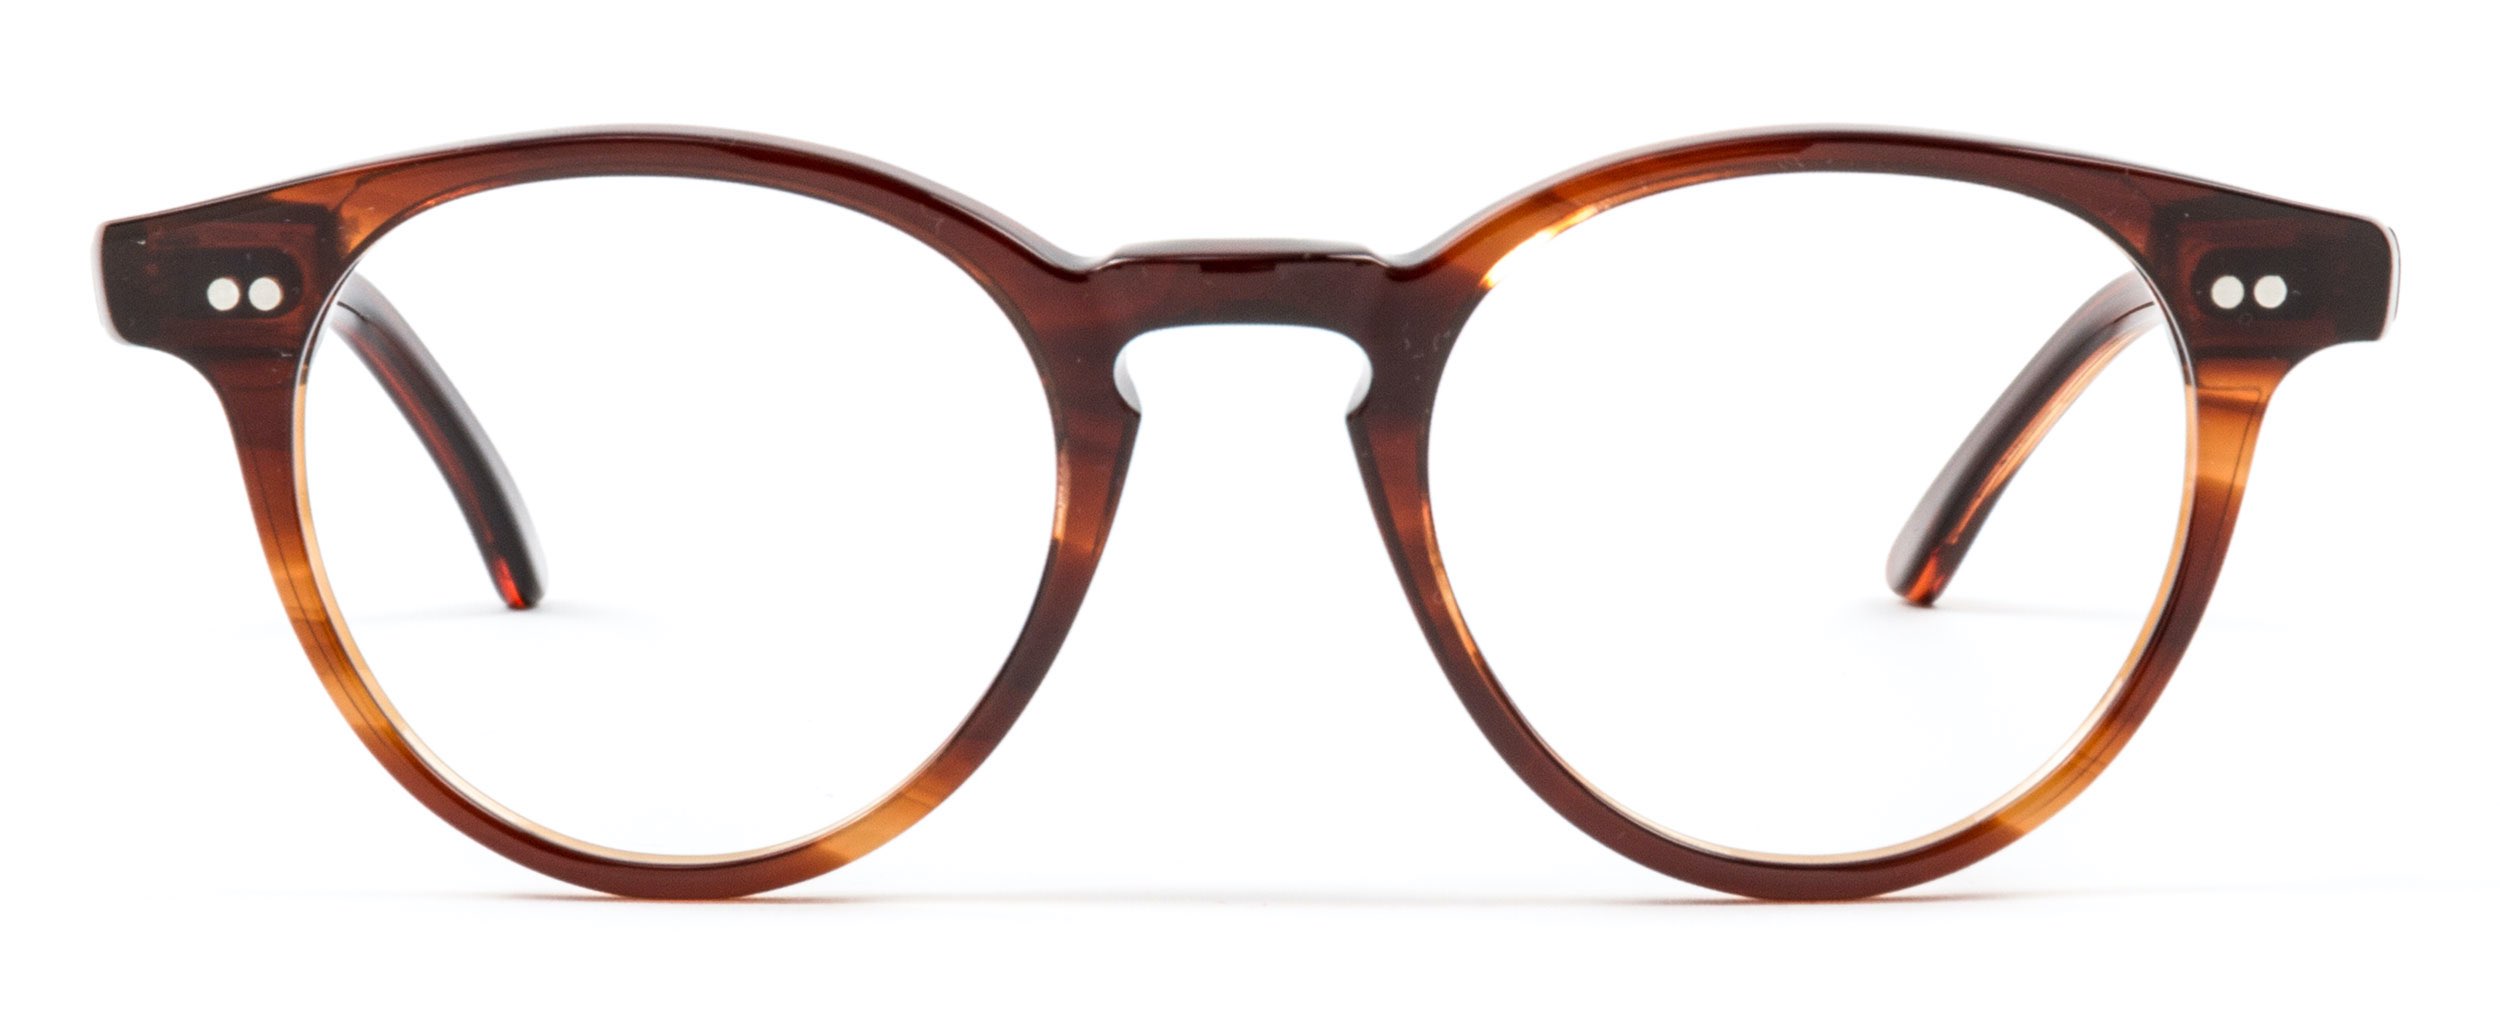 Regala gafas de diseño y calidad Miller & Marc por el Día del Padre